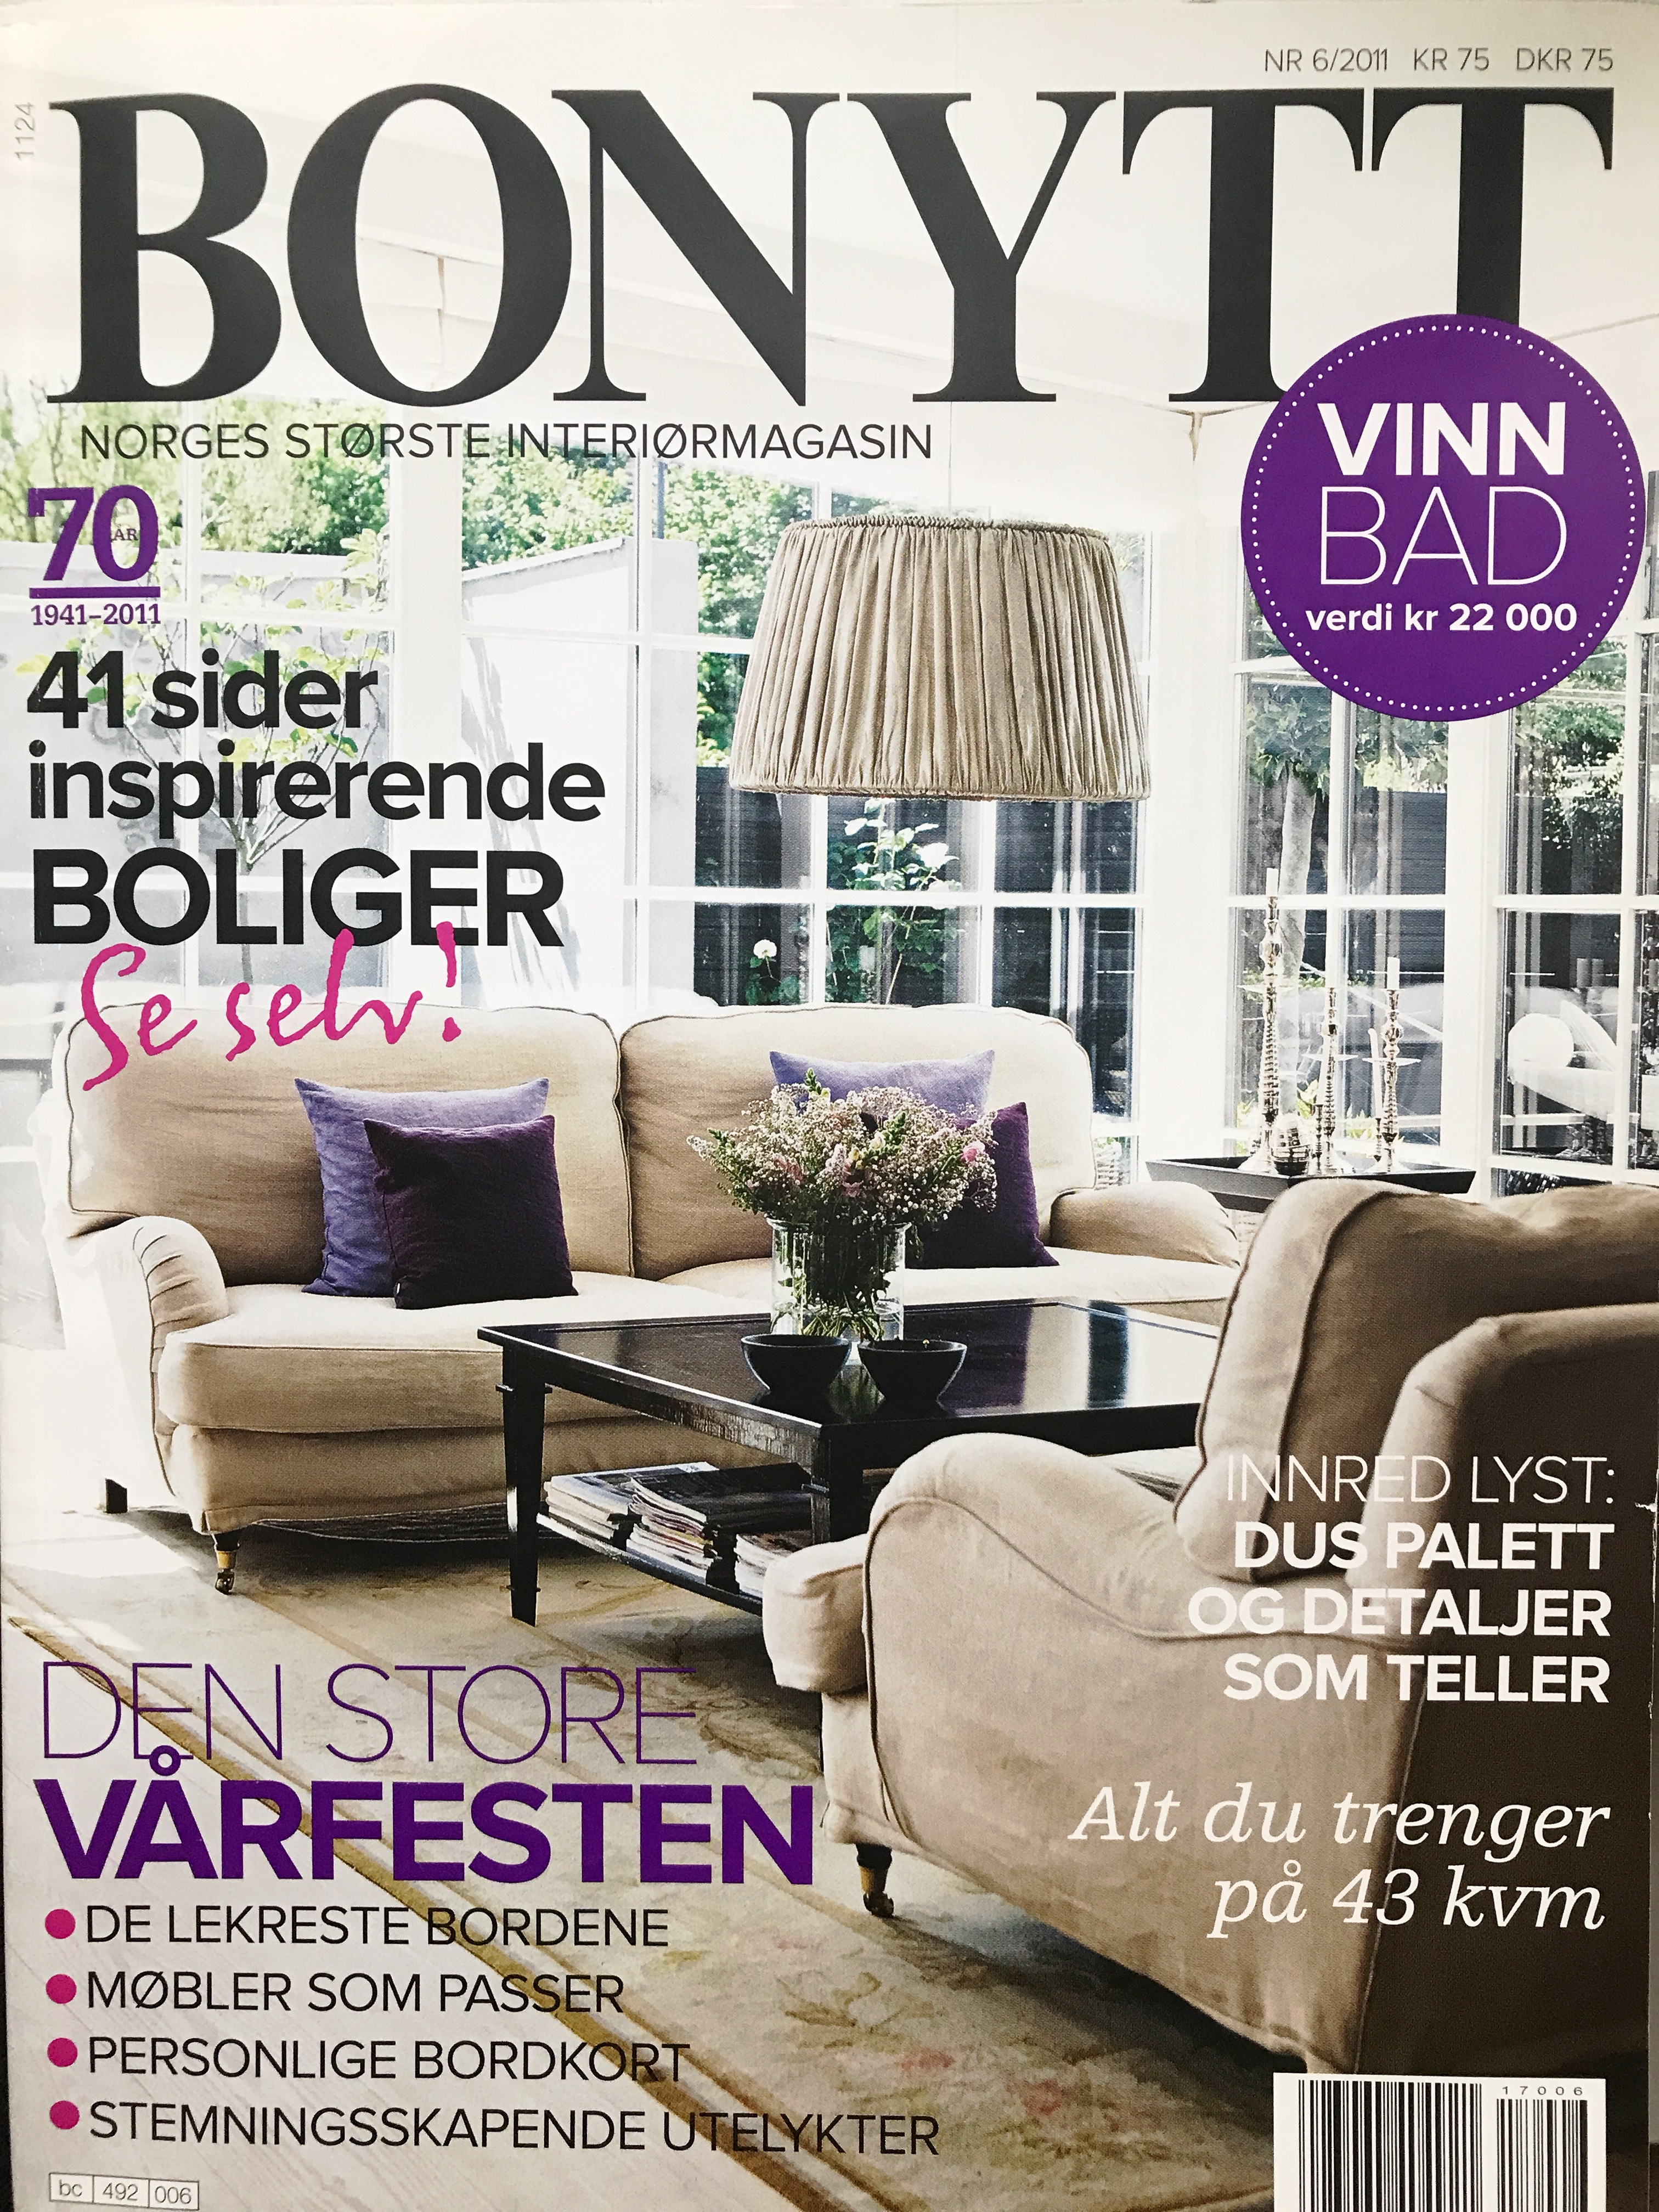 Bonytt 2011 part 1